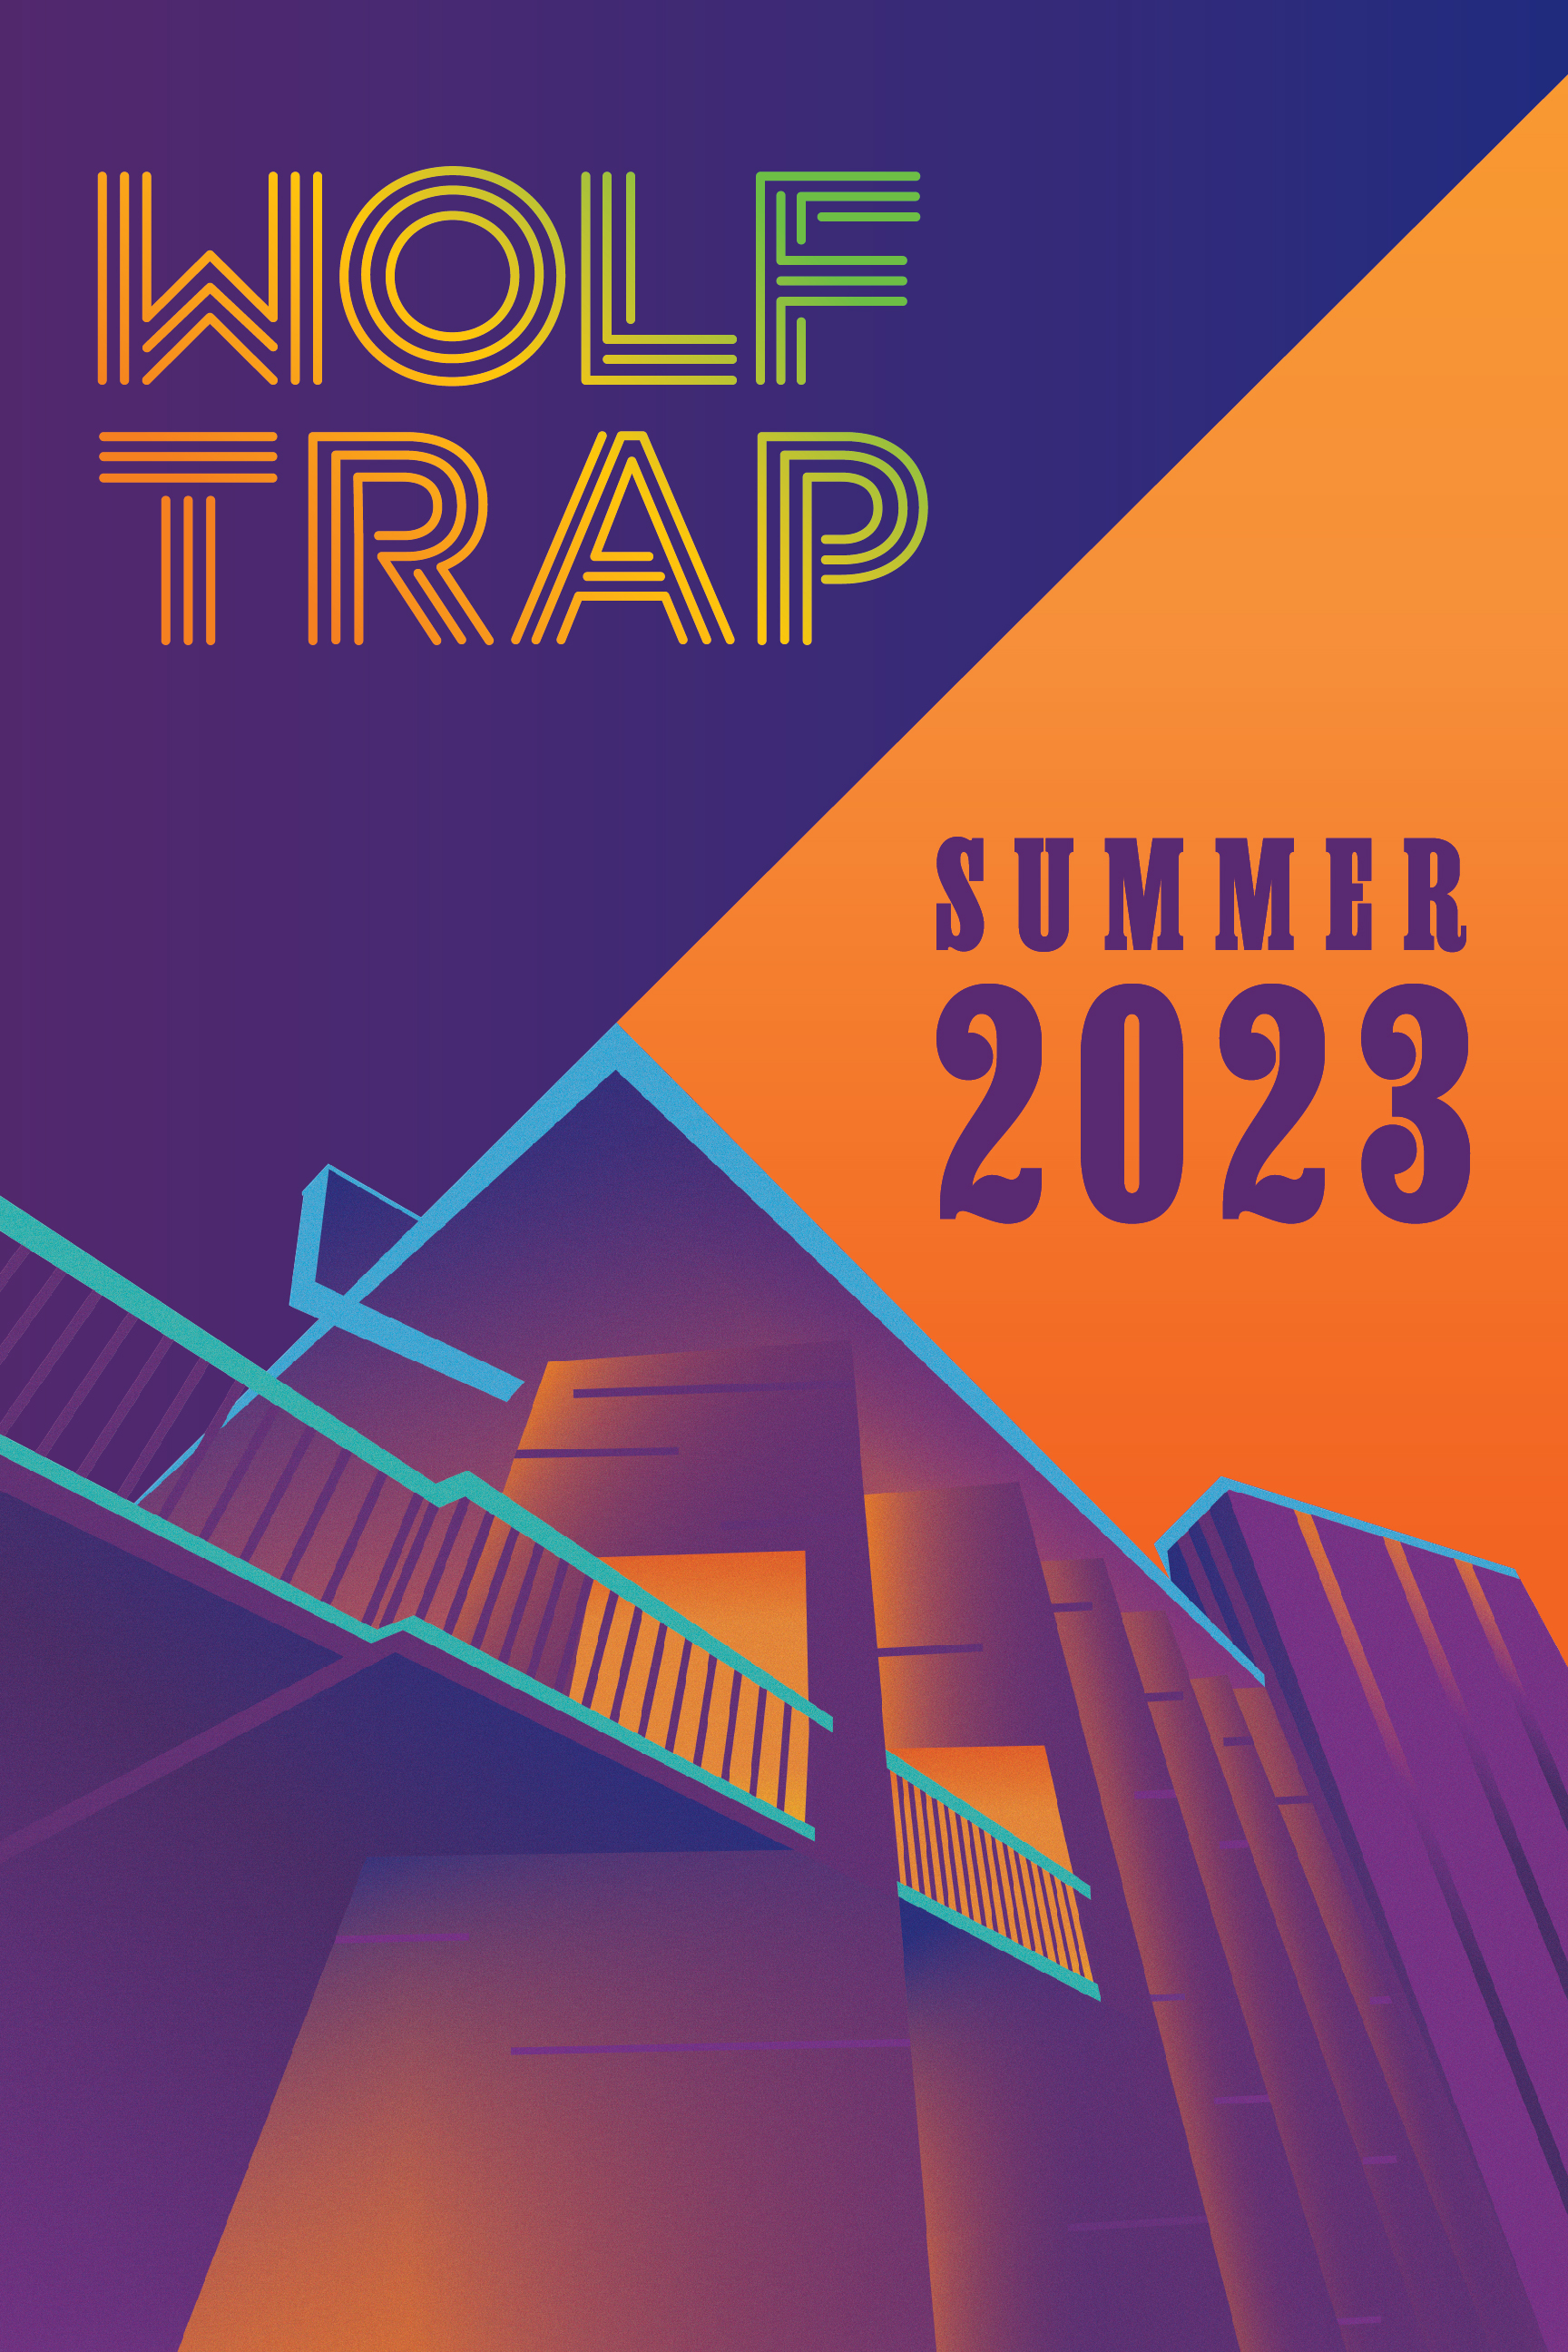 Wolf Trap Schedule Summer 2023 - Concerts